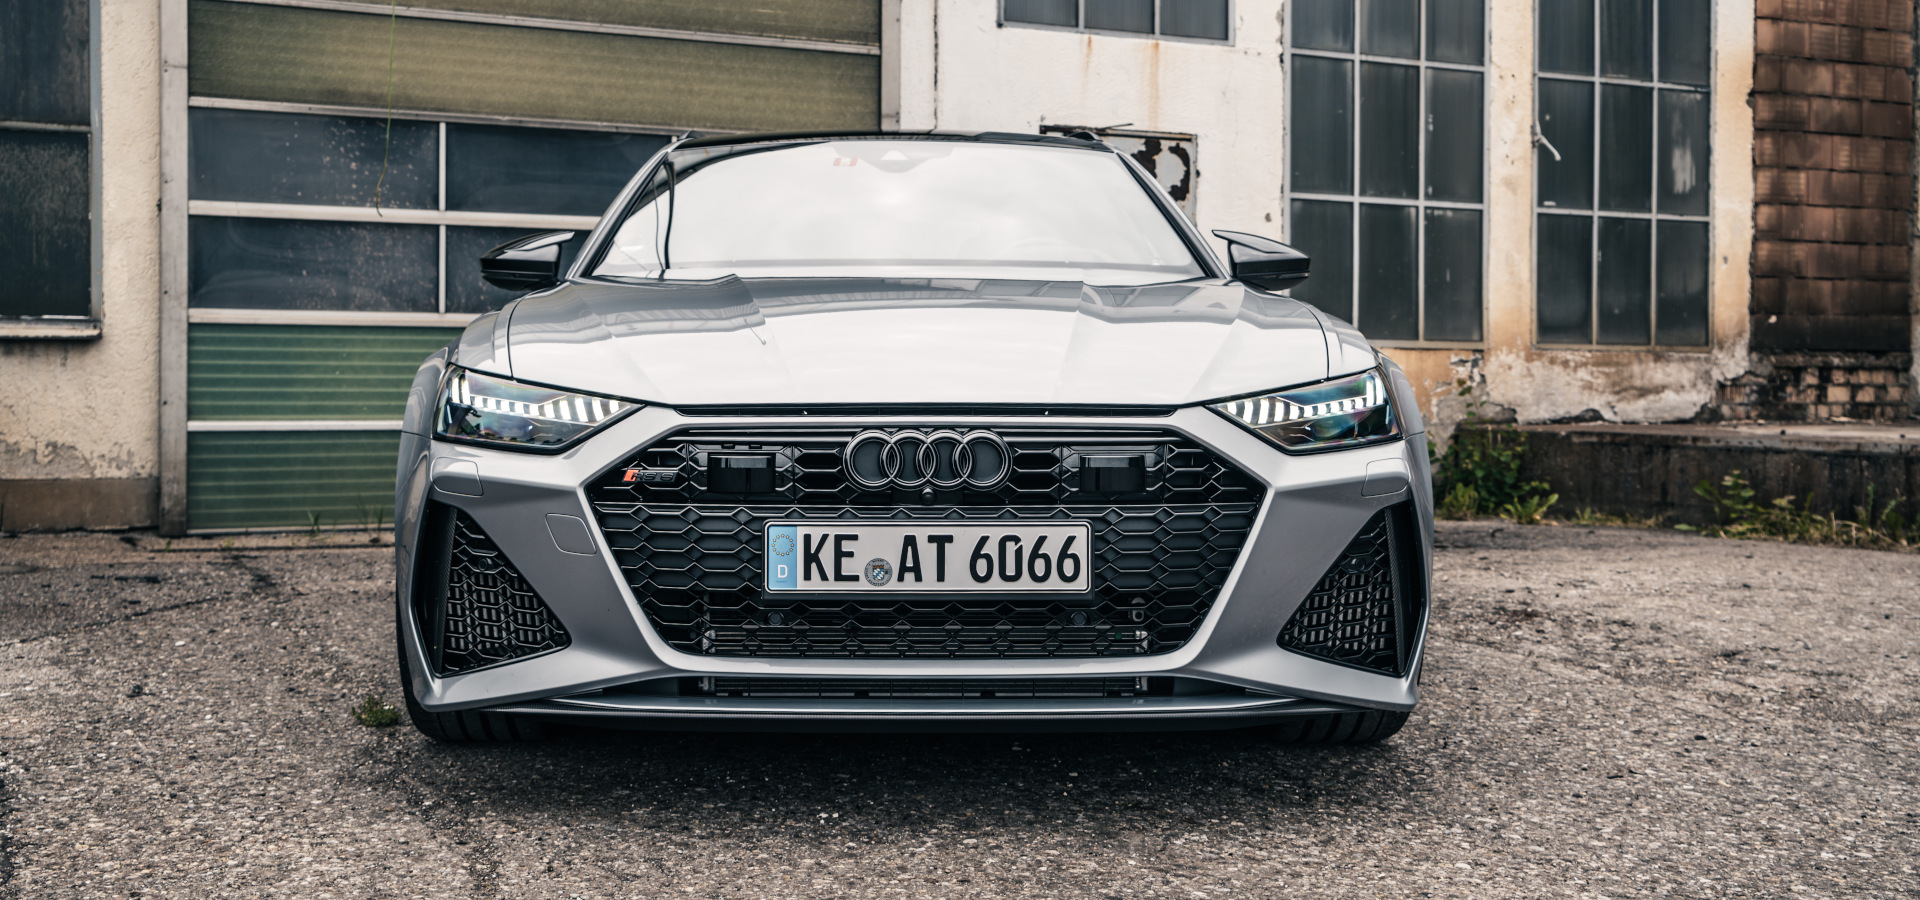 Hybrid-Tuning: Audi RS6-E von Abt mit mehr als 1.000 PS - EFAHRER.com